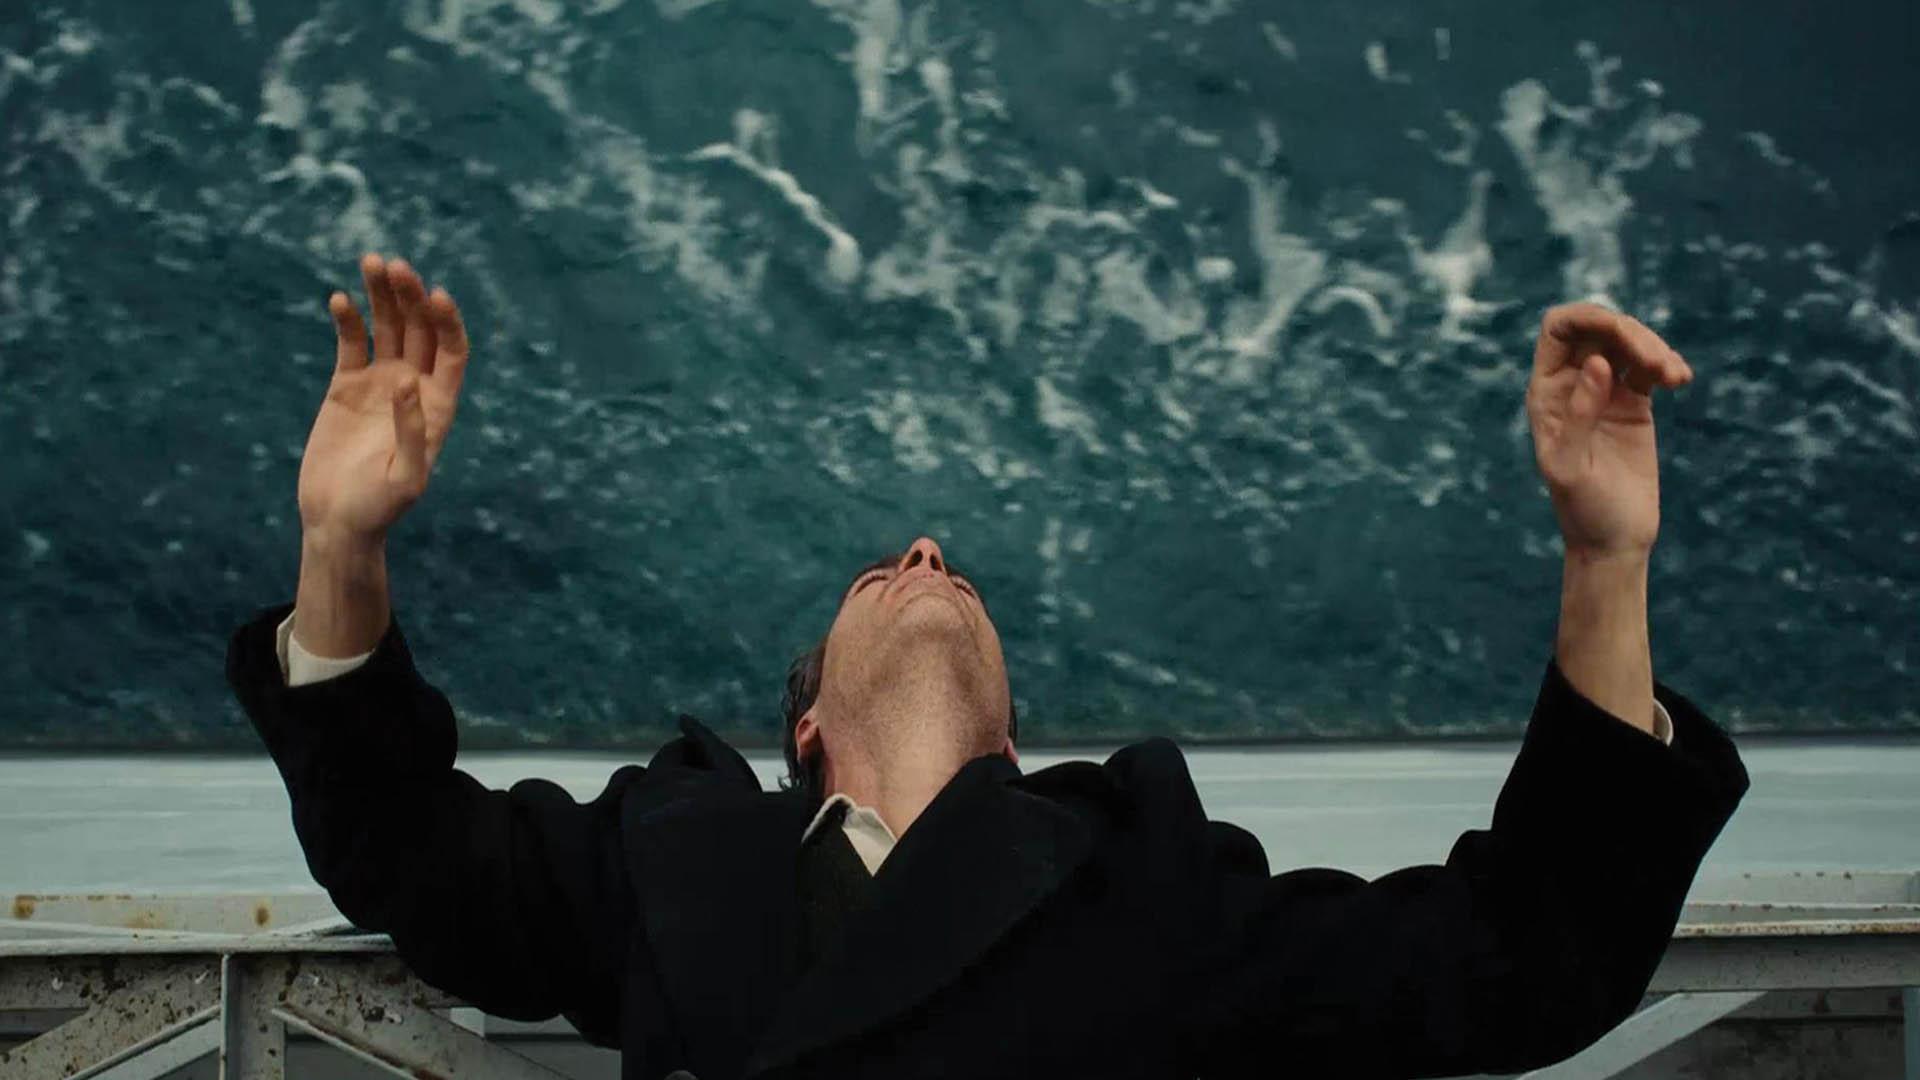 واکین فینیکس در فیلم The Master درحال آویزان شدن روی دریا